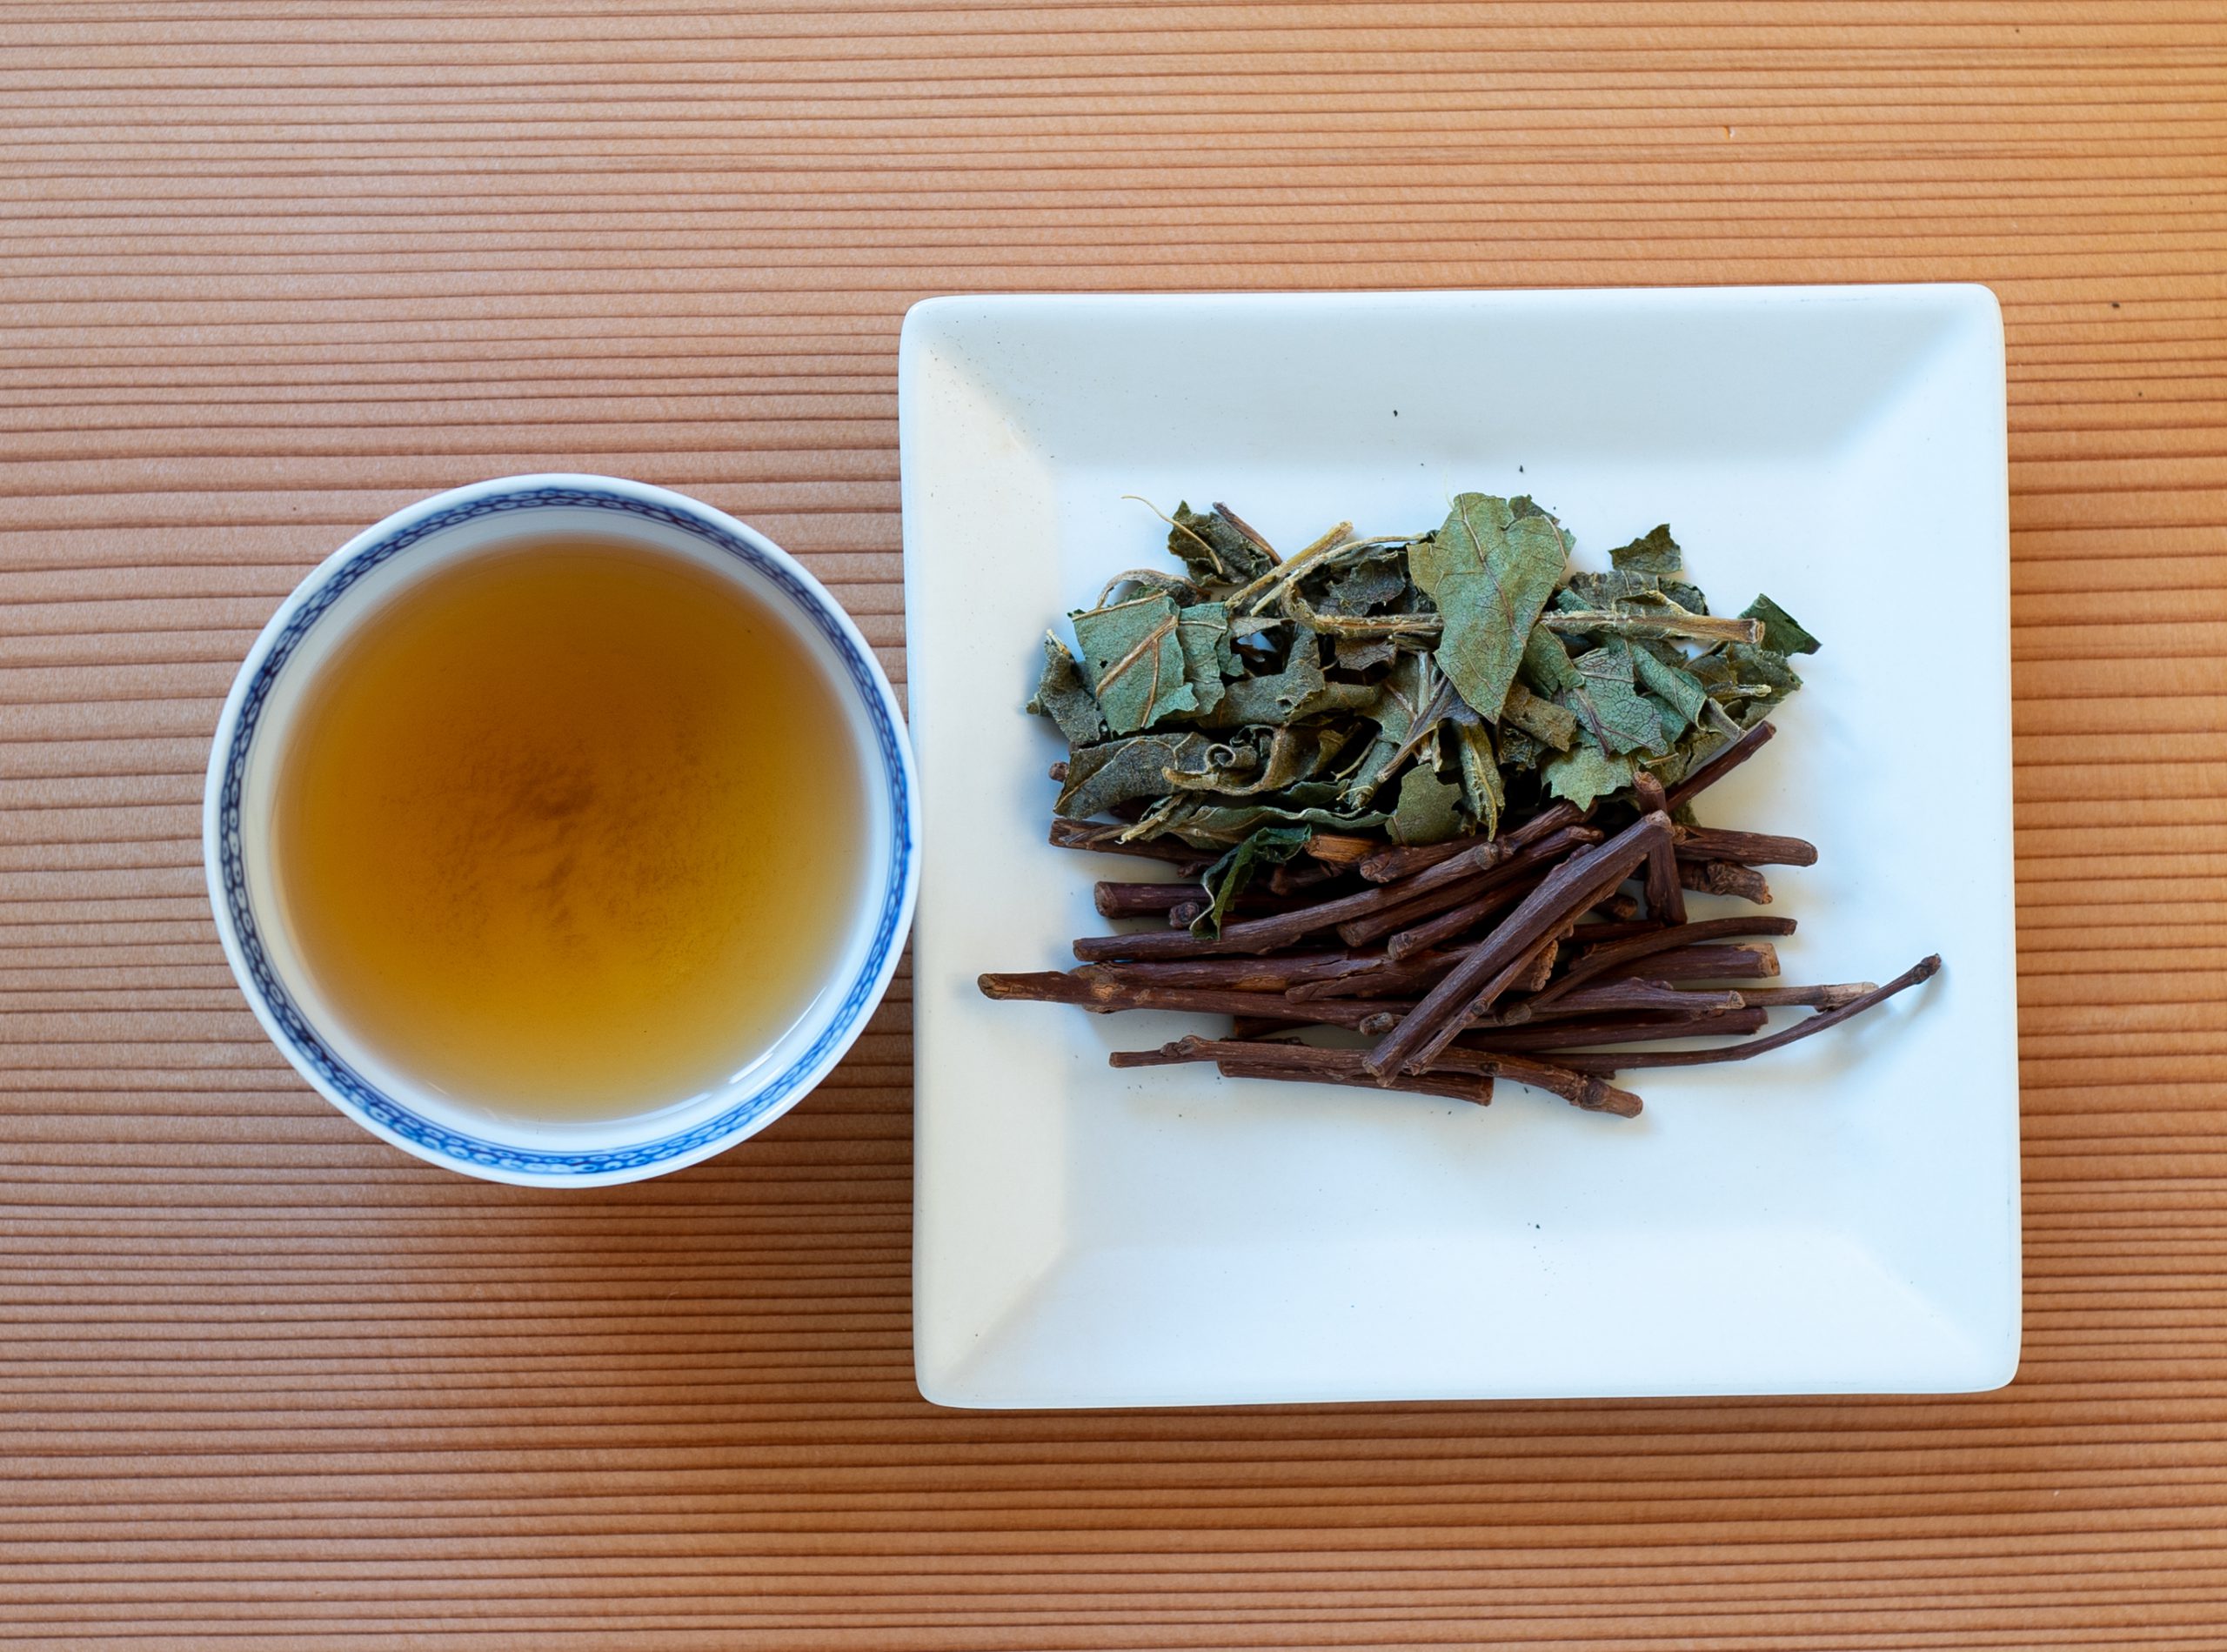 【自由テーマ】柿葉を使用した茶・調味料